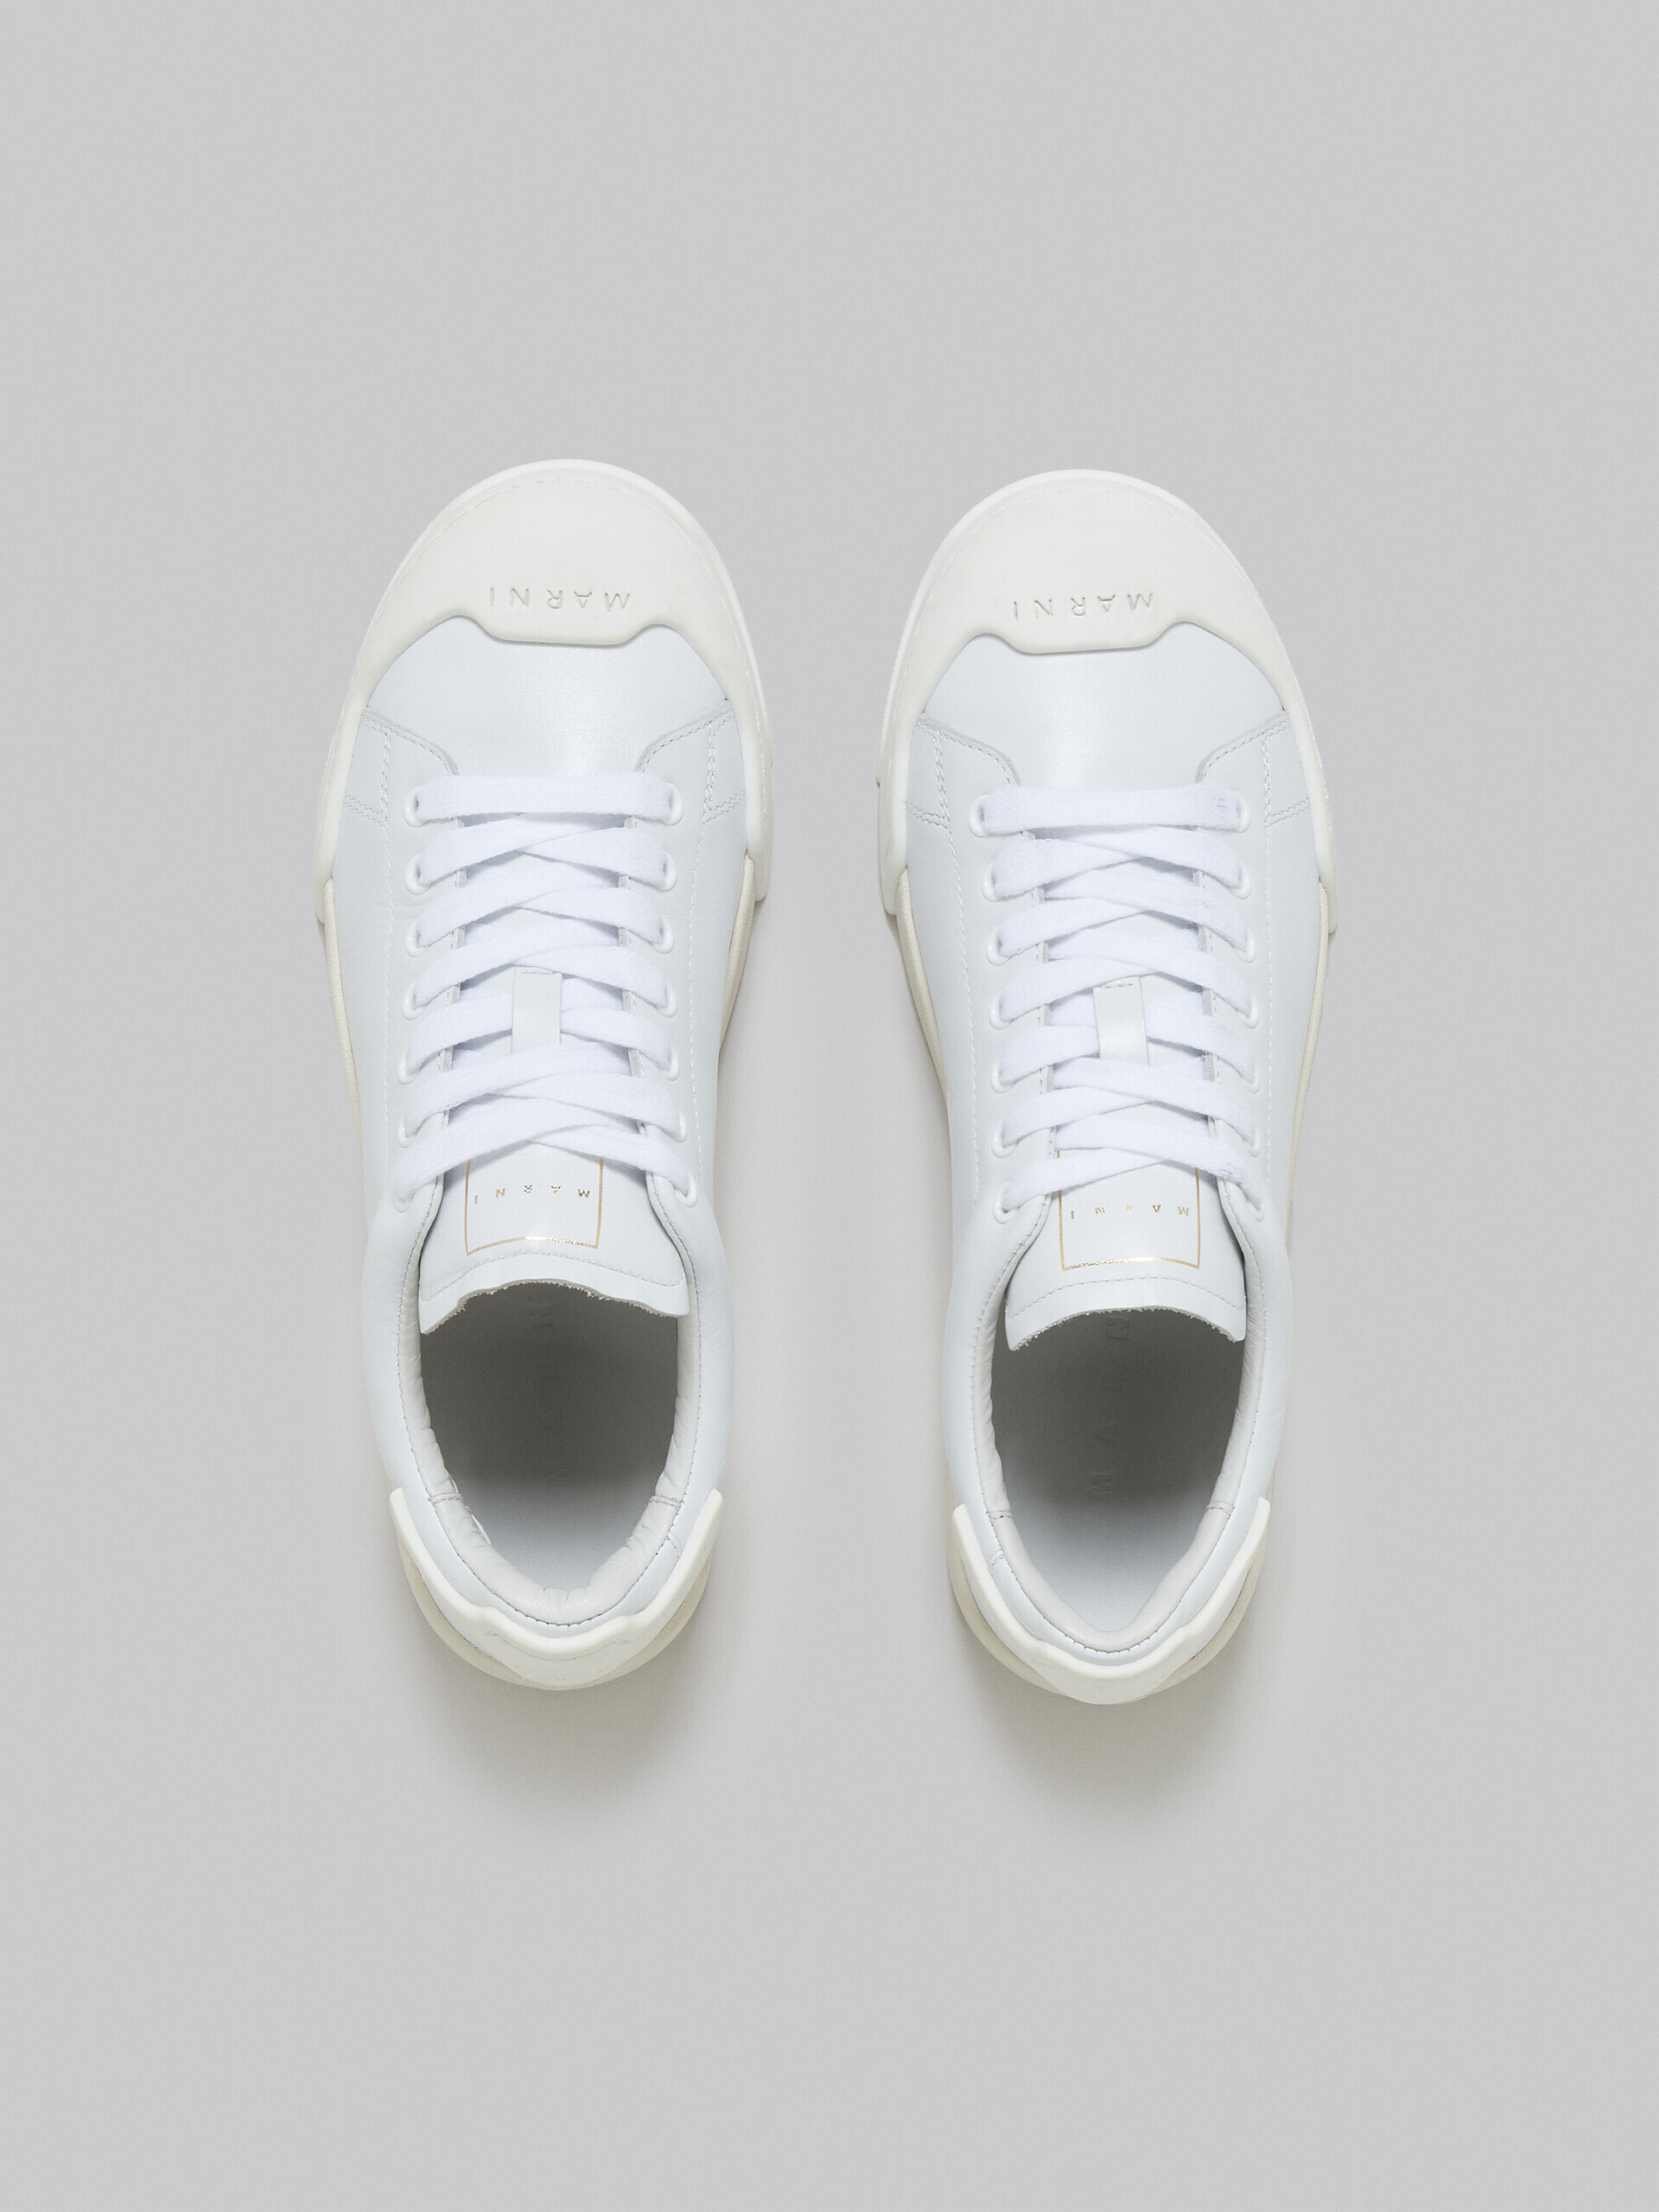 Sneakers Dada Bumper aus weißem Leder - Sneakers - Image 4